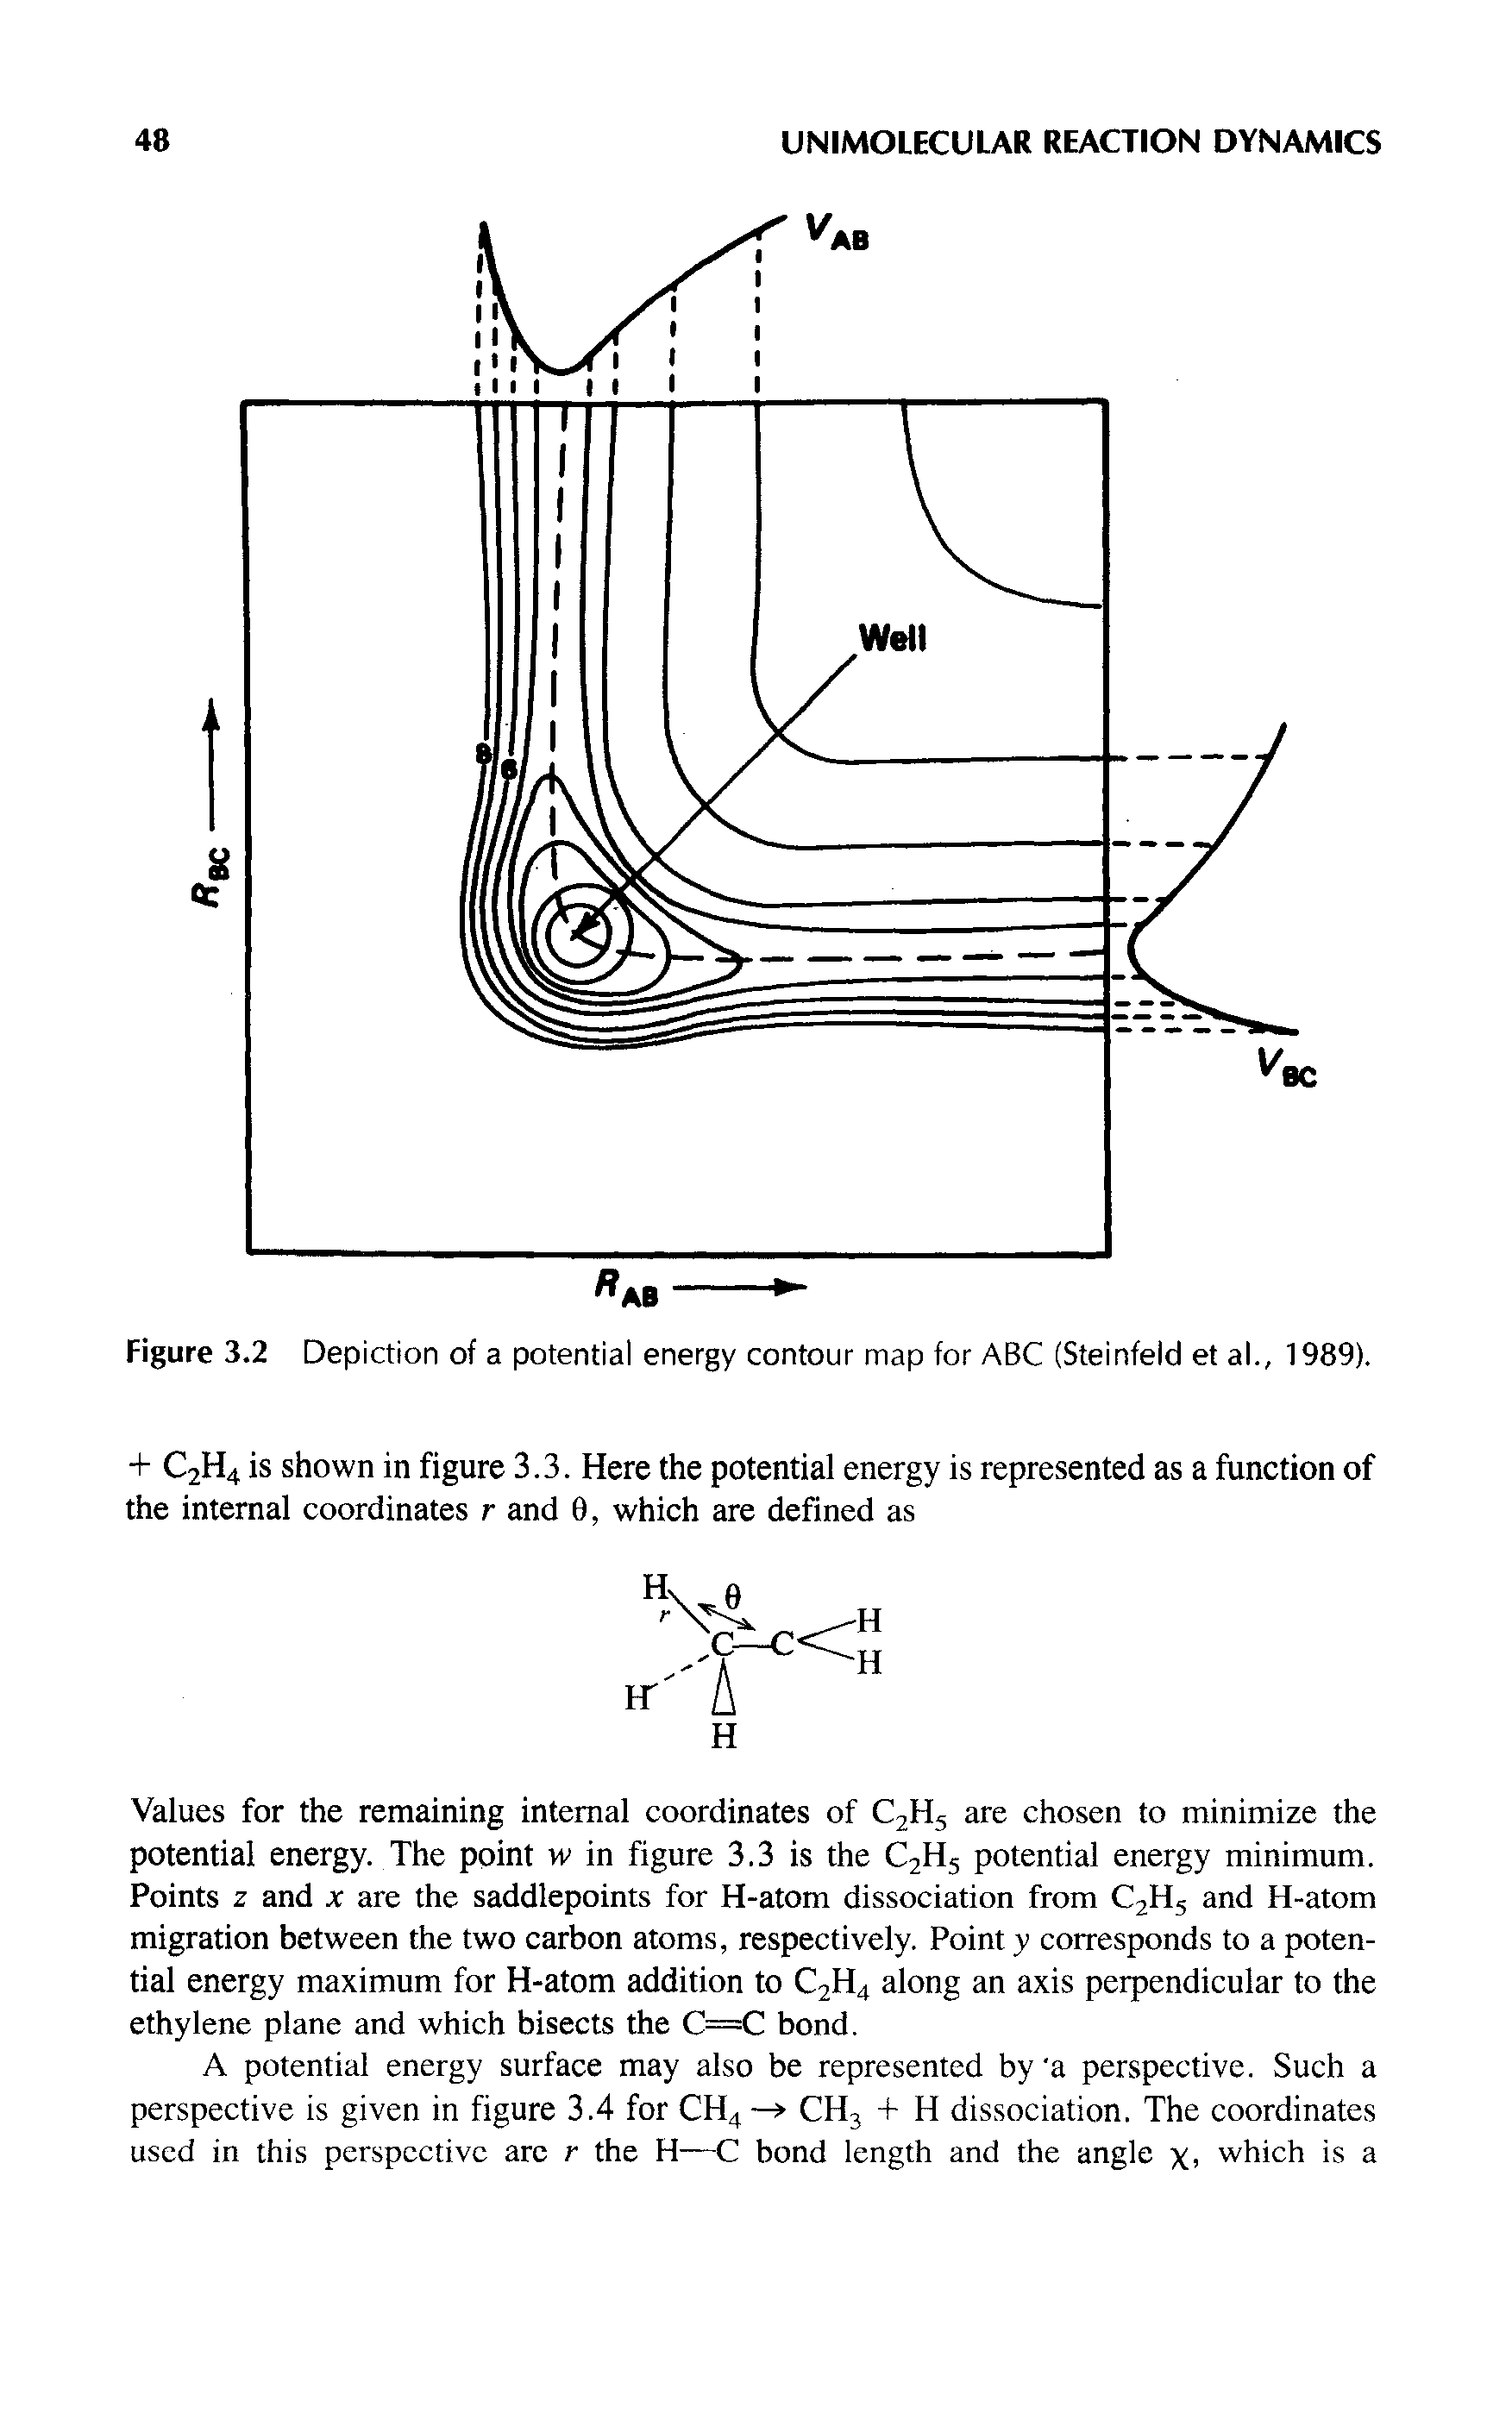 Figure 3.2 Depiction of a potential energy contour map for ABC (Steinfeld et al., 1989).